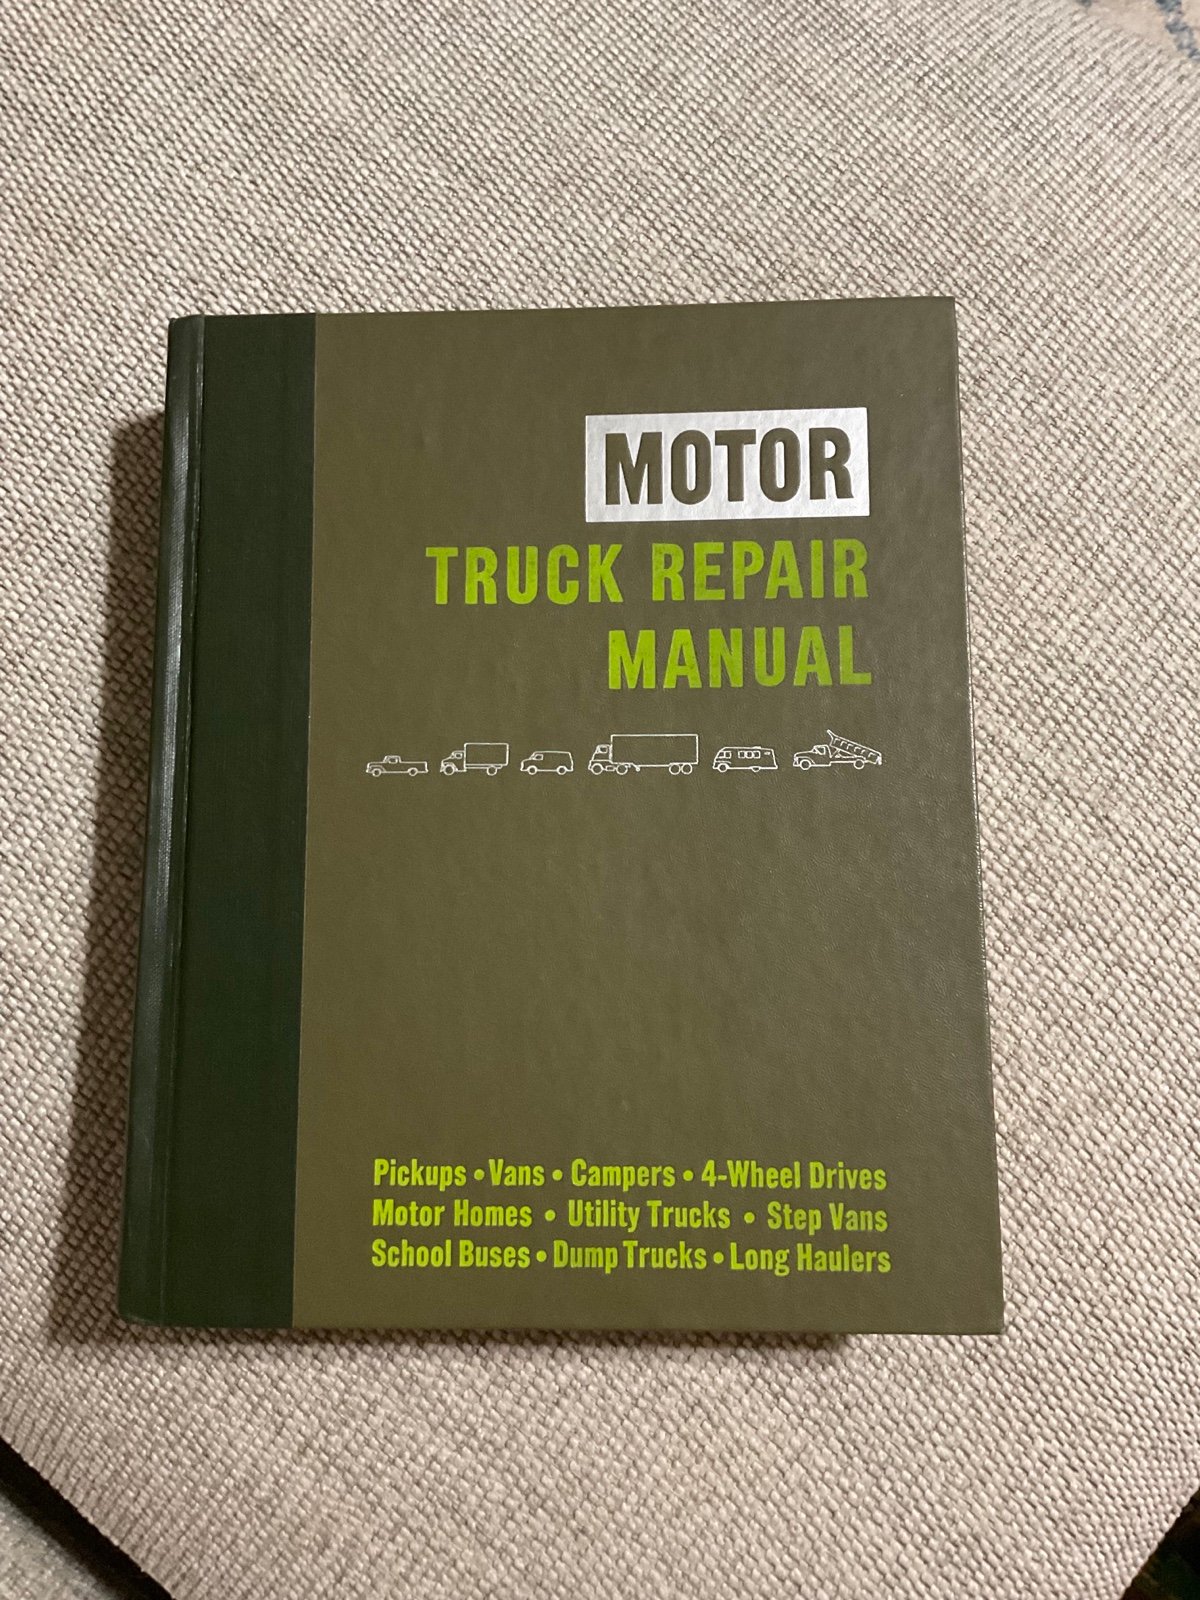 Motor Truck Repair Manual 35th NXyEL84xK